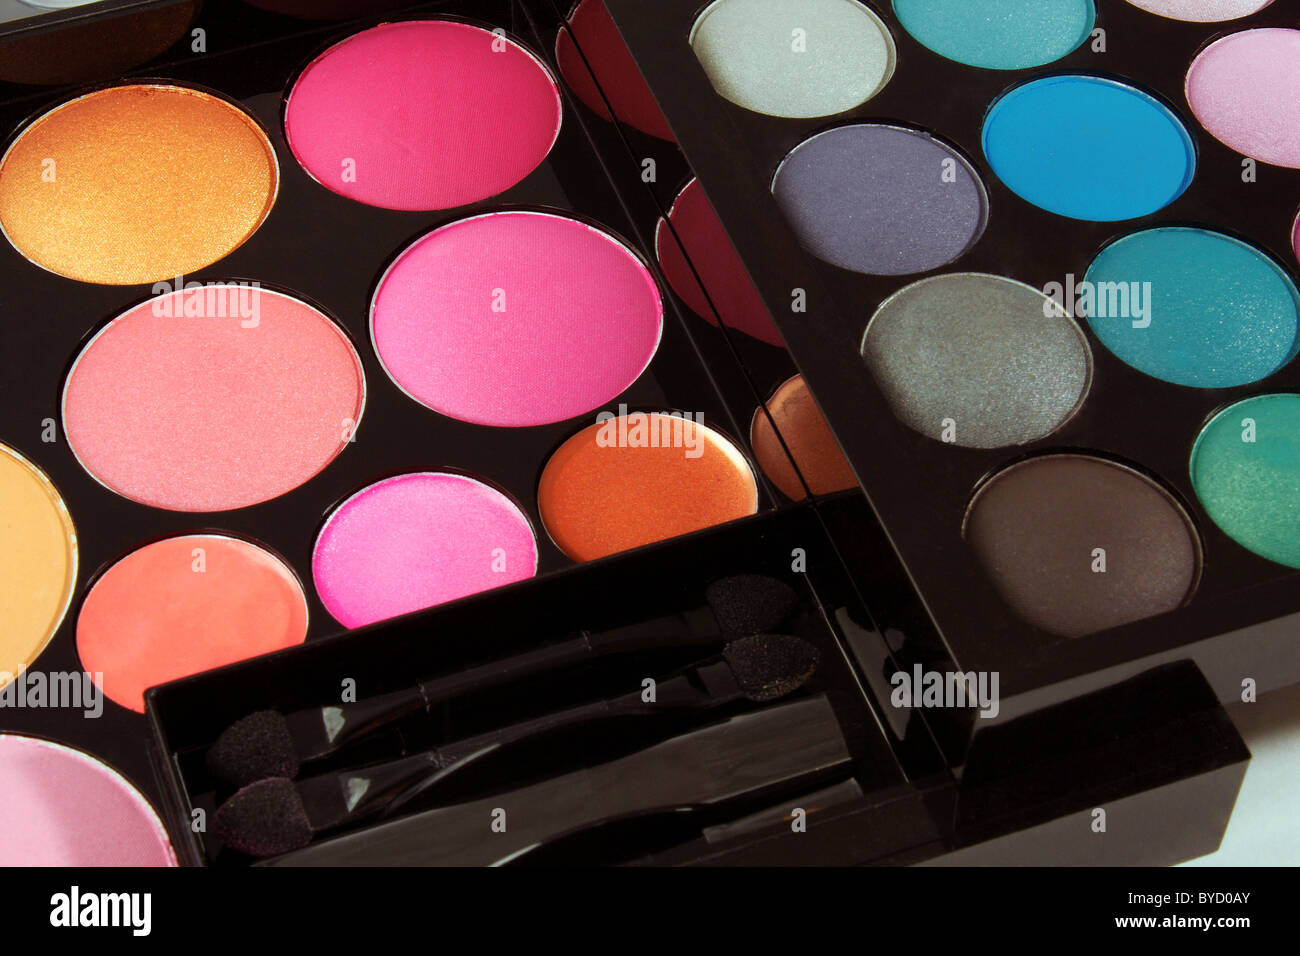 Una collezione di cosmetici occhio ombre, blushers e polveri in una moderna cosmesi professional make up box come un set regalo Foto Stock